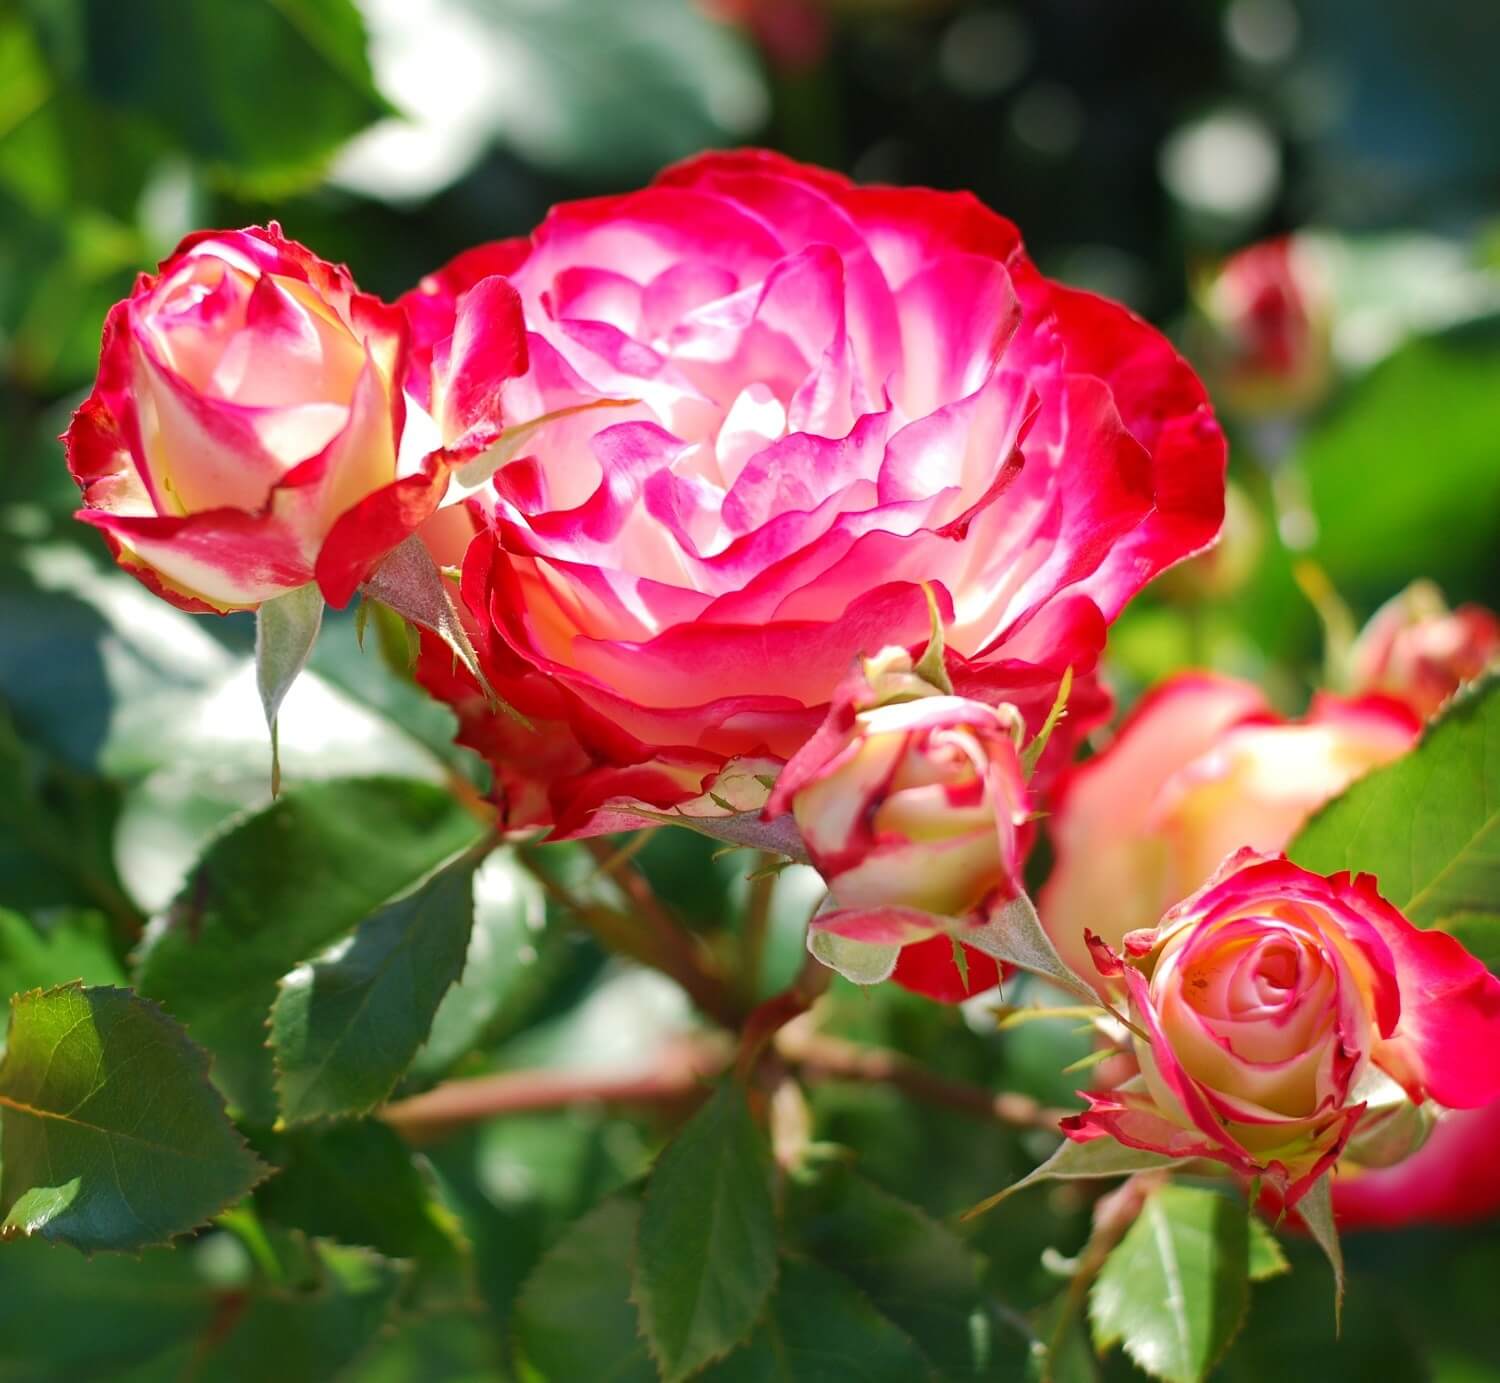 Jubile de Saint-Petersbourg (Юбилей Санкт-Петербурга) - морозоустойчивая двухцветная роза в собственном саду